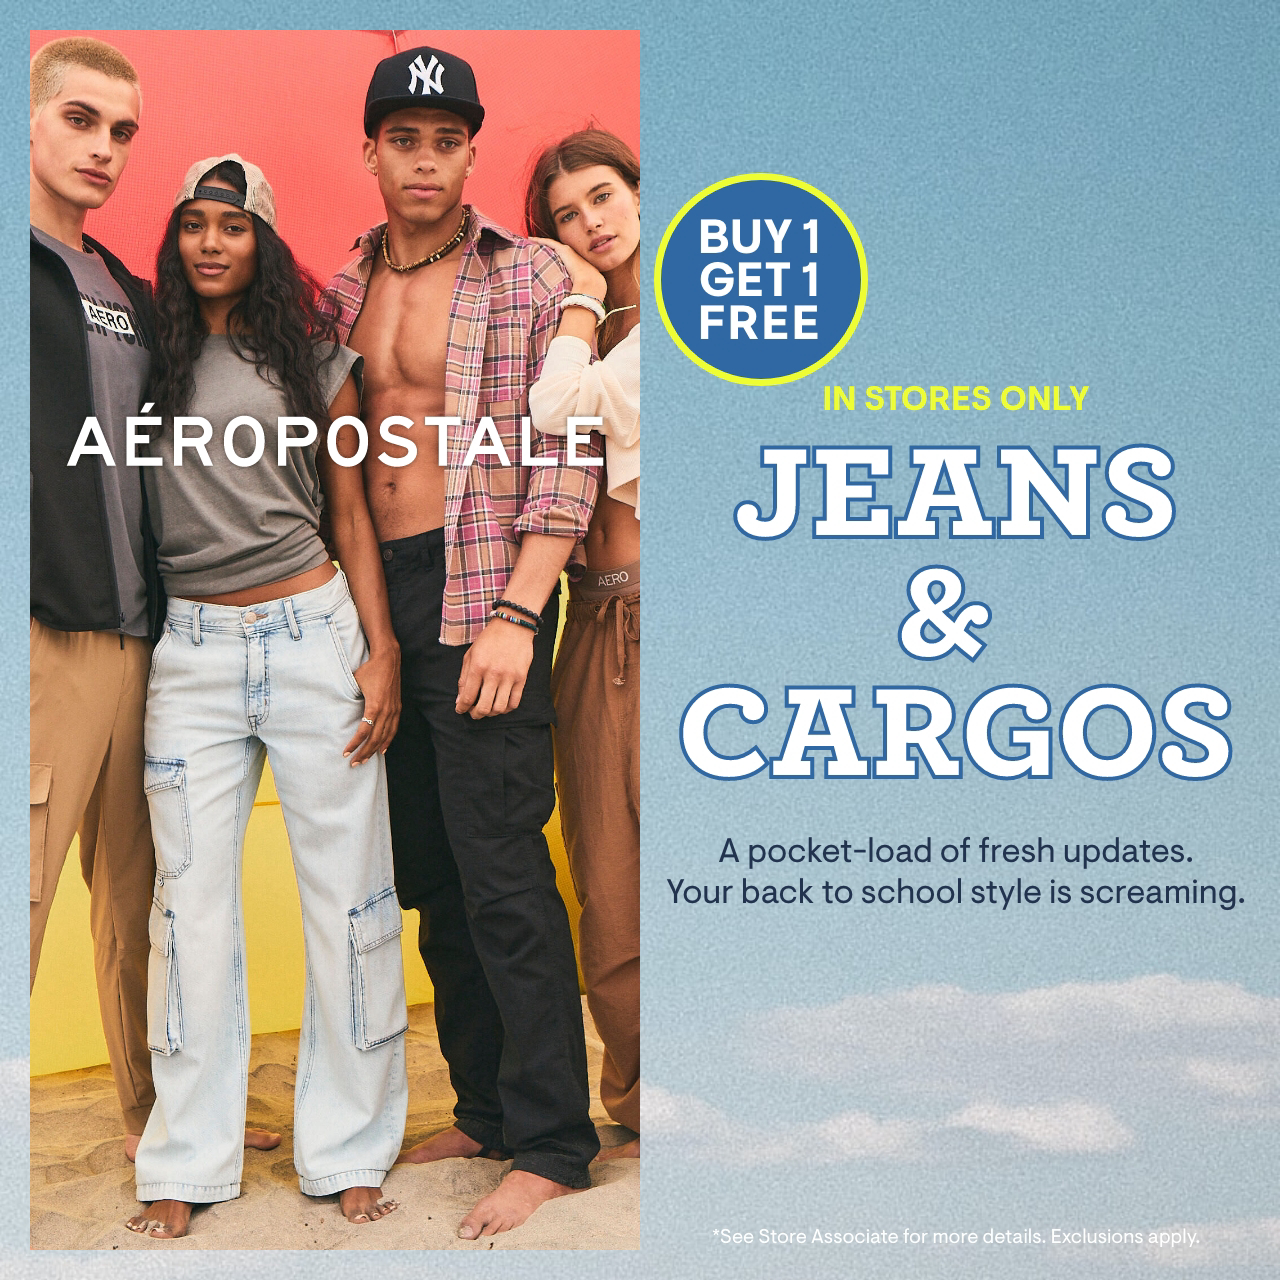 Aeropostale Campaign 95 Jeans Cargos. Buy 1 Get 1 Free EN 1280x1280 1